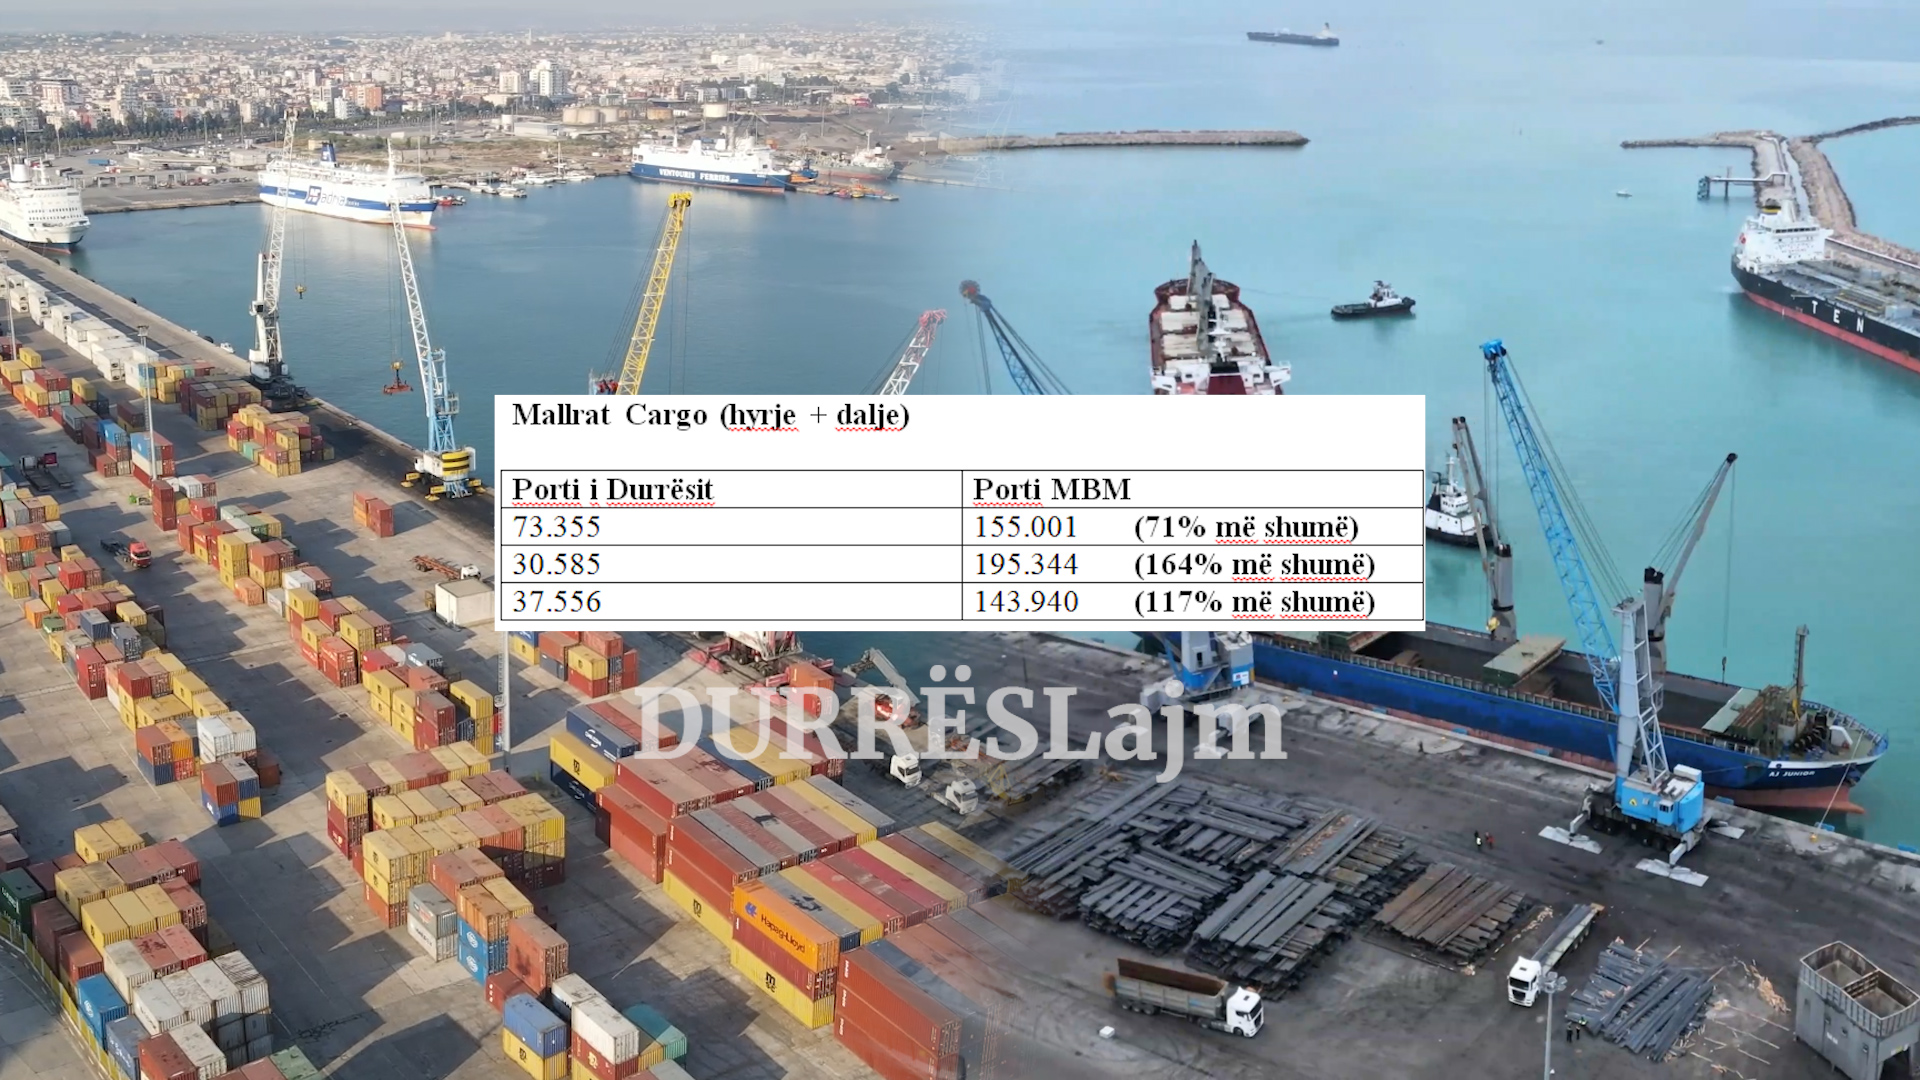 Porti MBM në Porto Romano “fundos” portin e Durrësit (VIDEO)